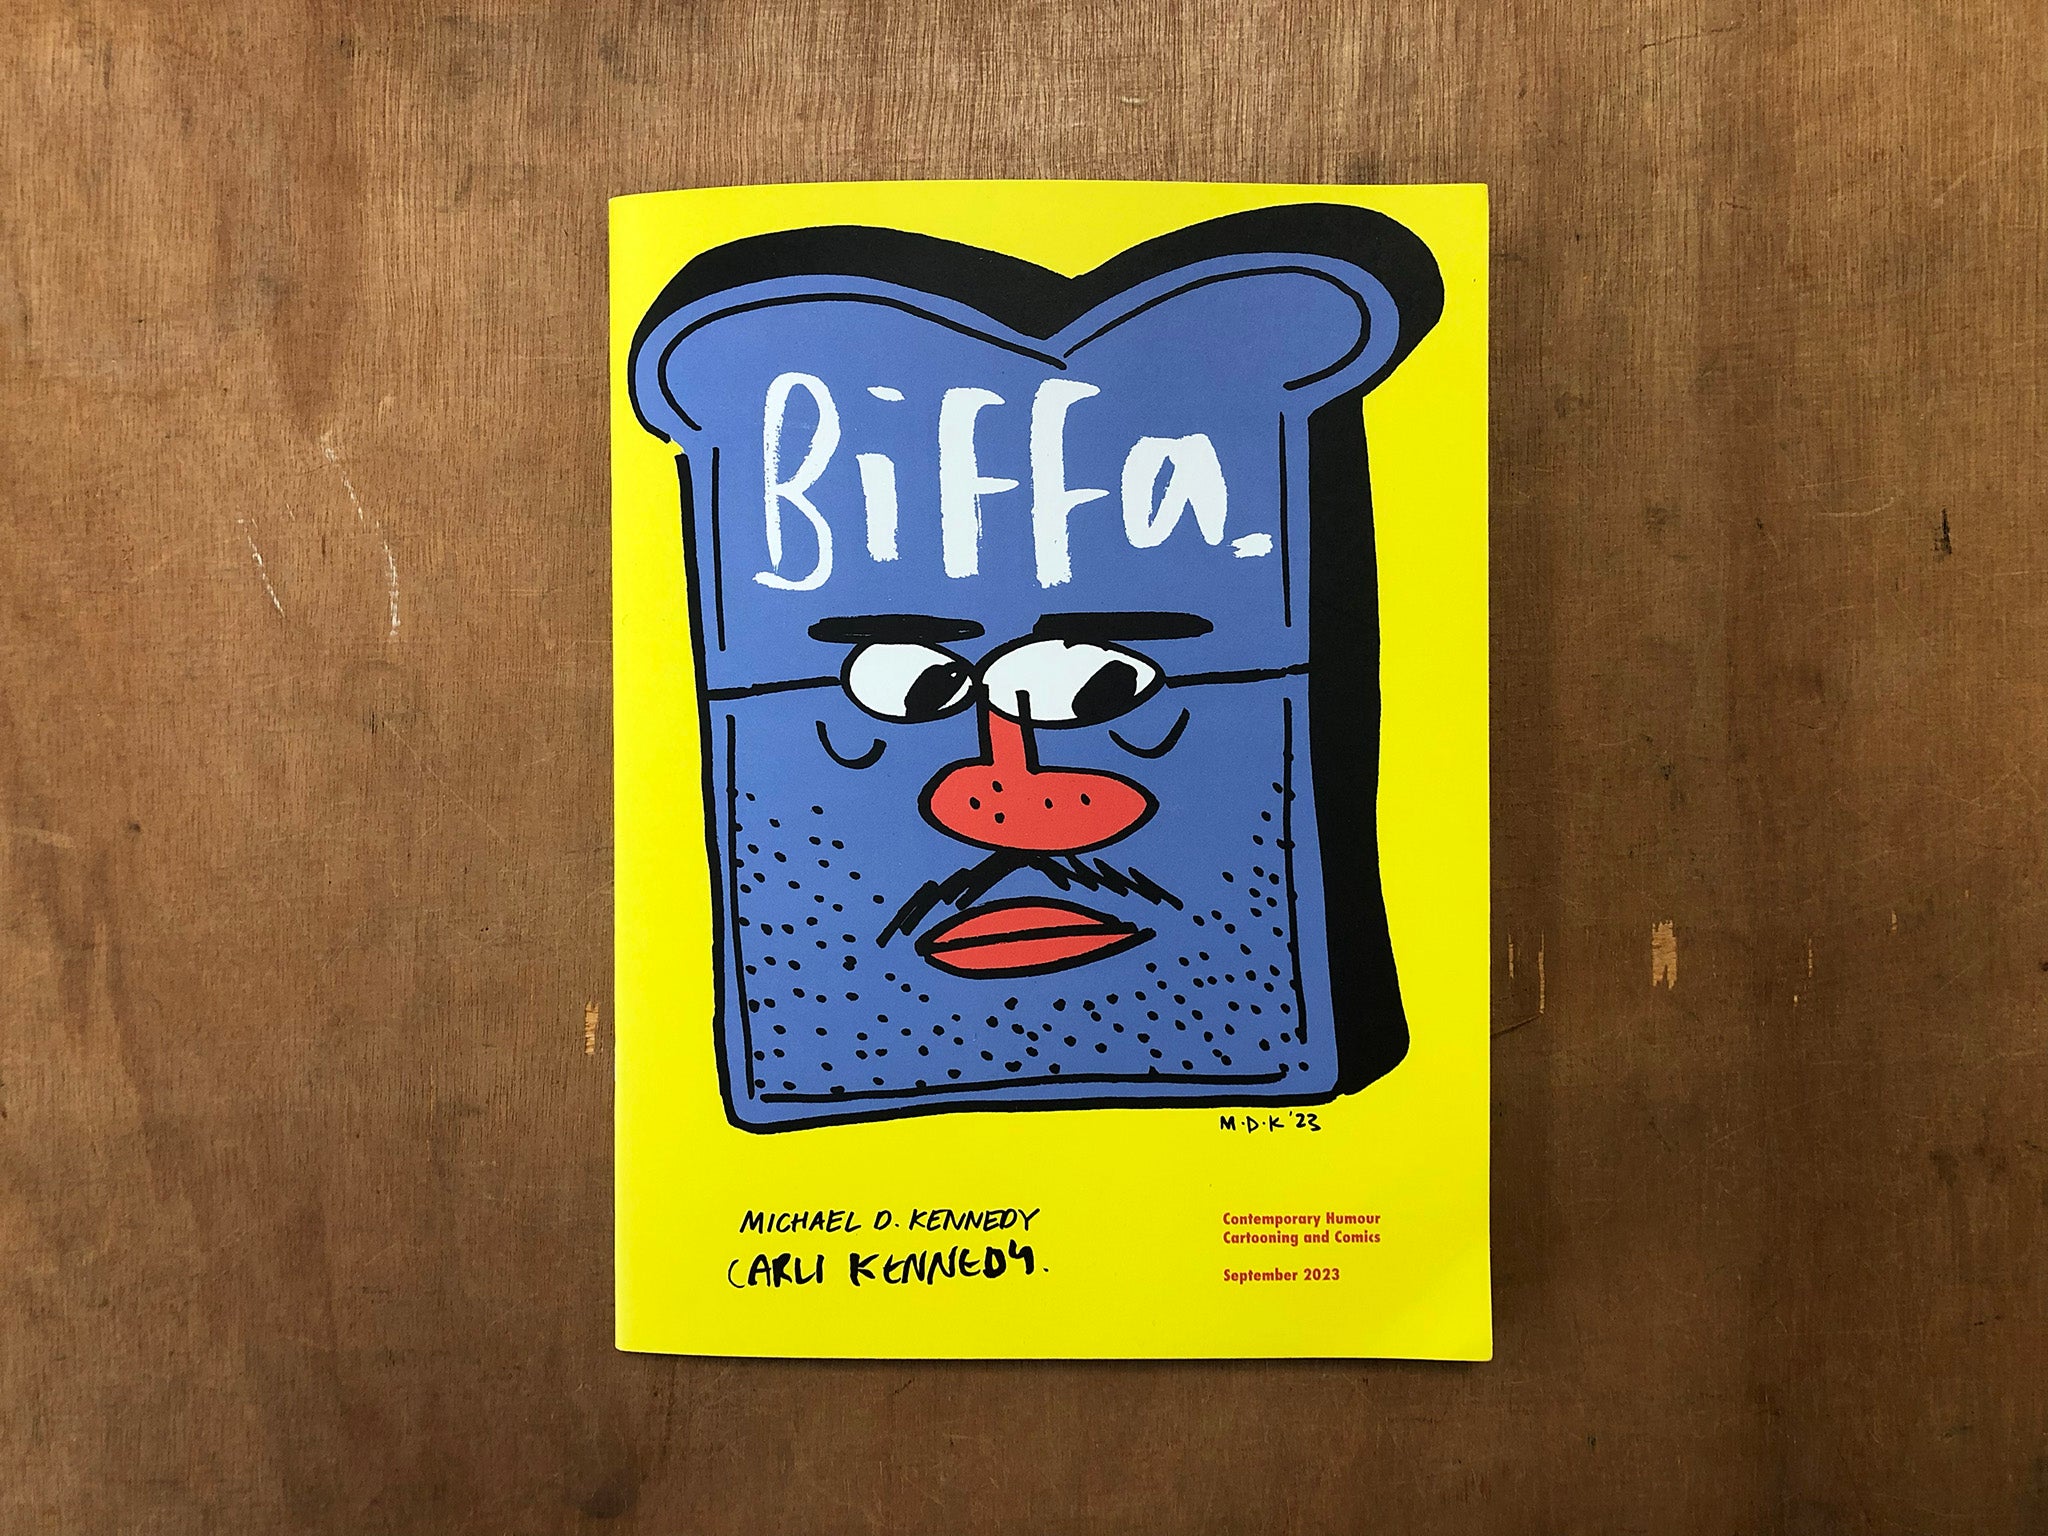 BIFFA by Michael D. Kennedy and Carli Kennedy